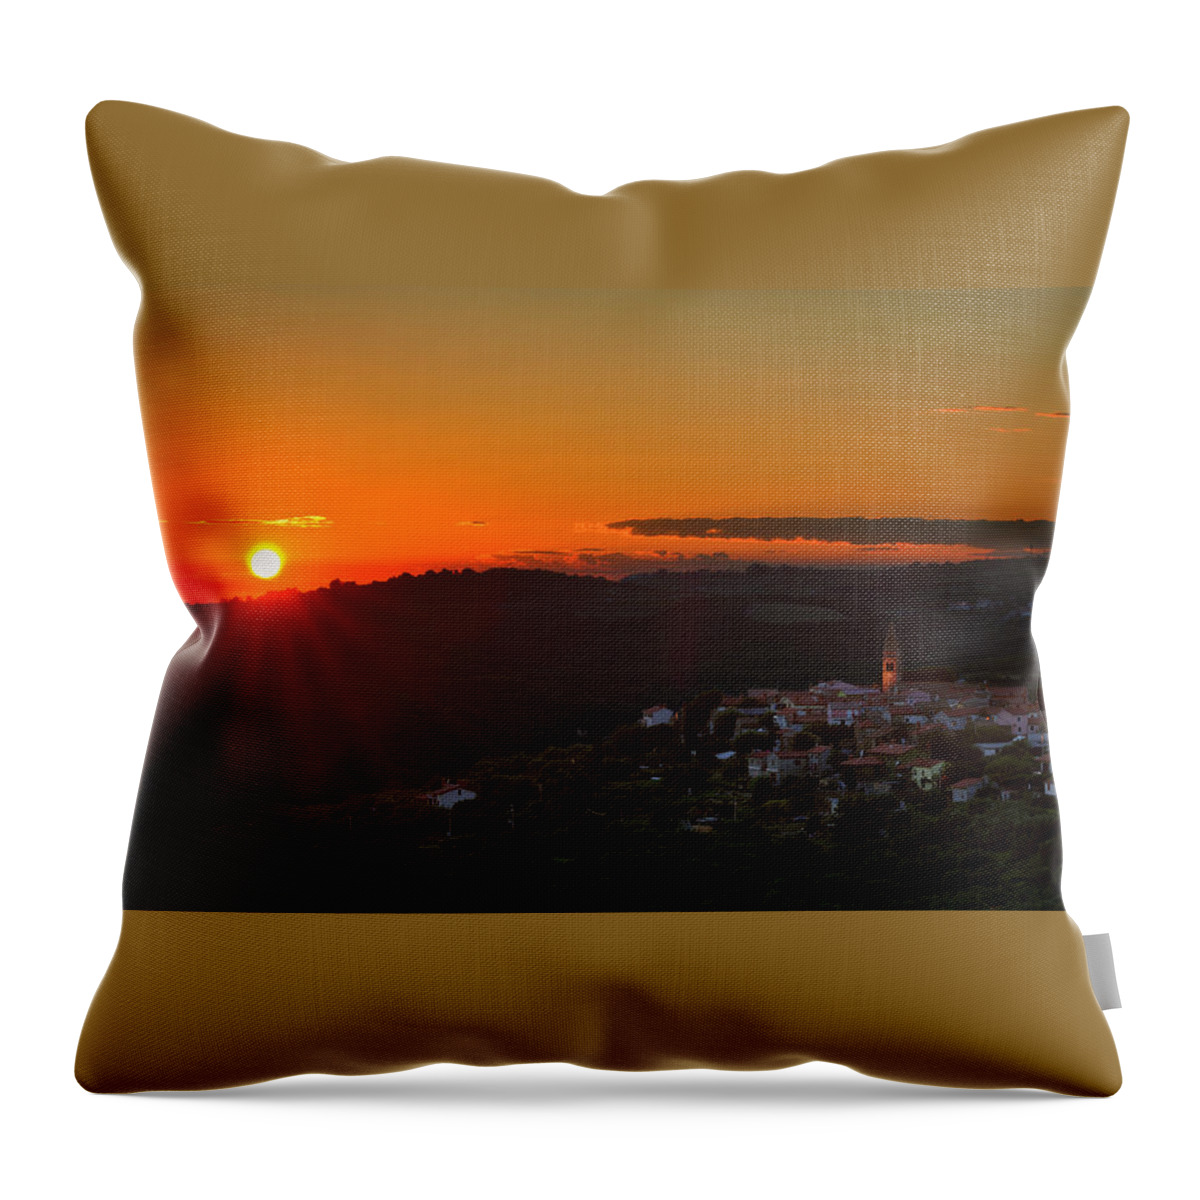 Padna Throw Pillow featuring the photograph Sunset at Padna by Robert Krajnc